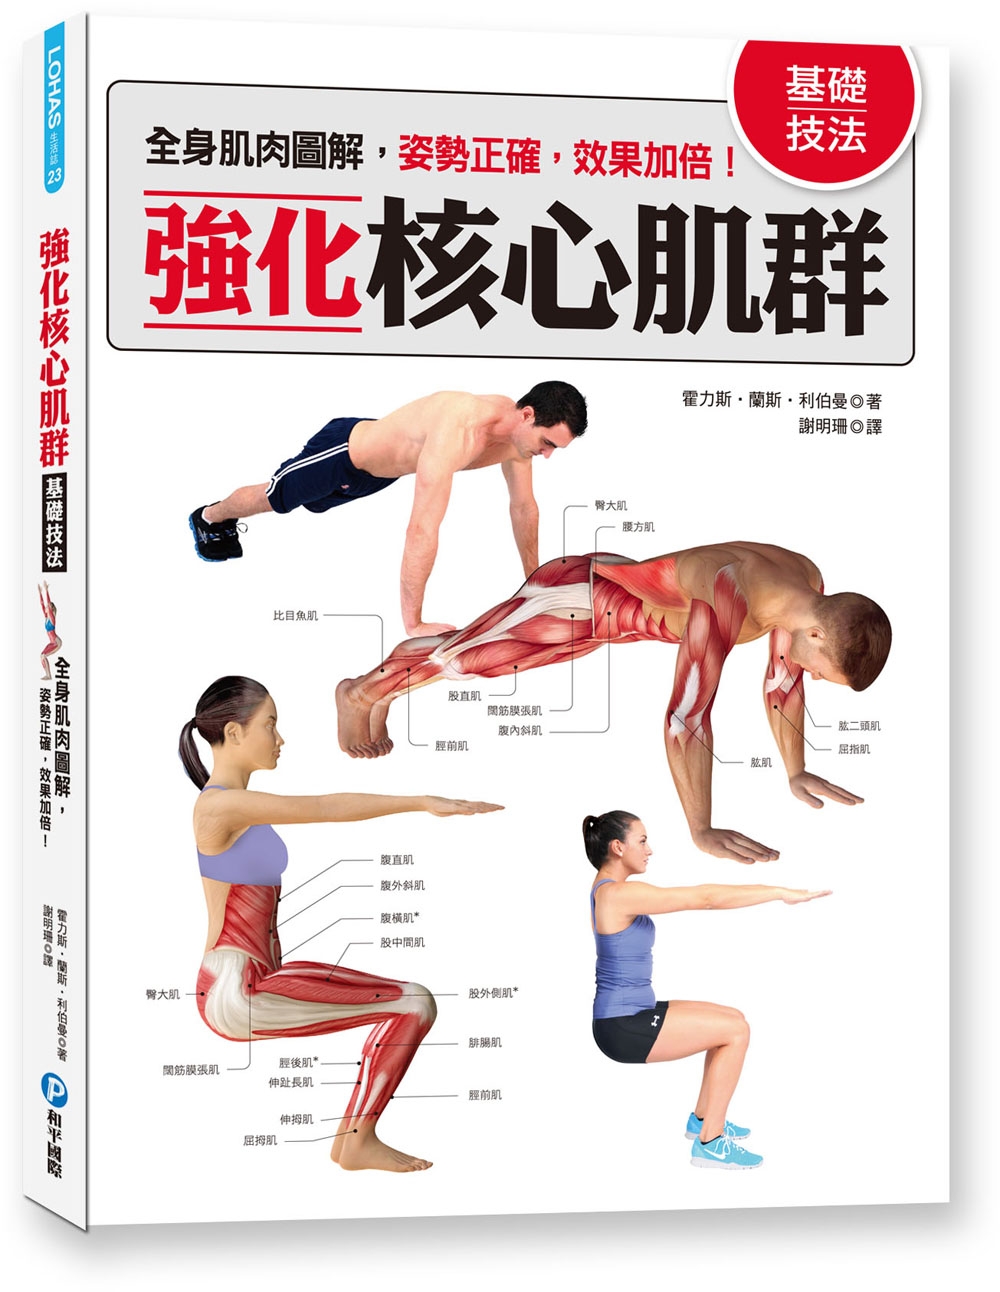 強化核心肌群基礎技法：全身肌肉圖解，姿勢正確，效果加倍!